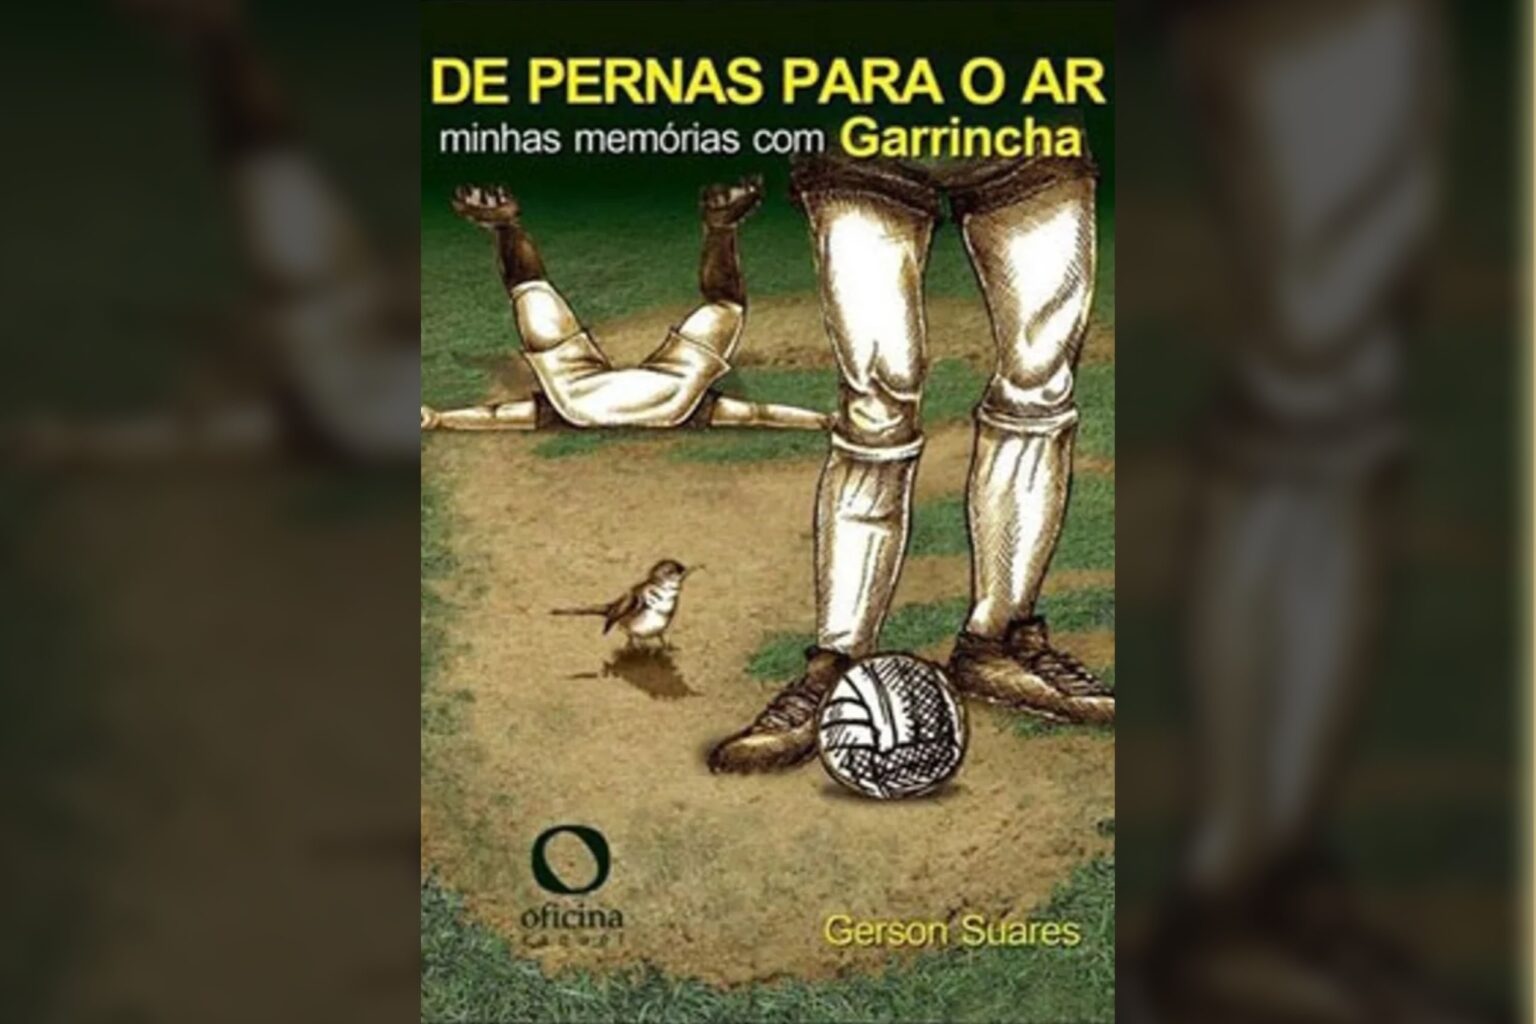 De Pernas Para o Ar – Minhas memórias com Garrincha: da lenda ao homem (Gerson Suares)│Resenha